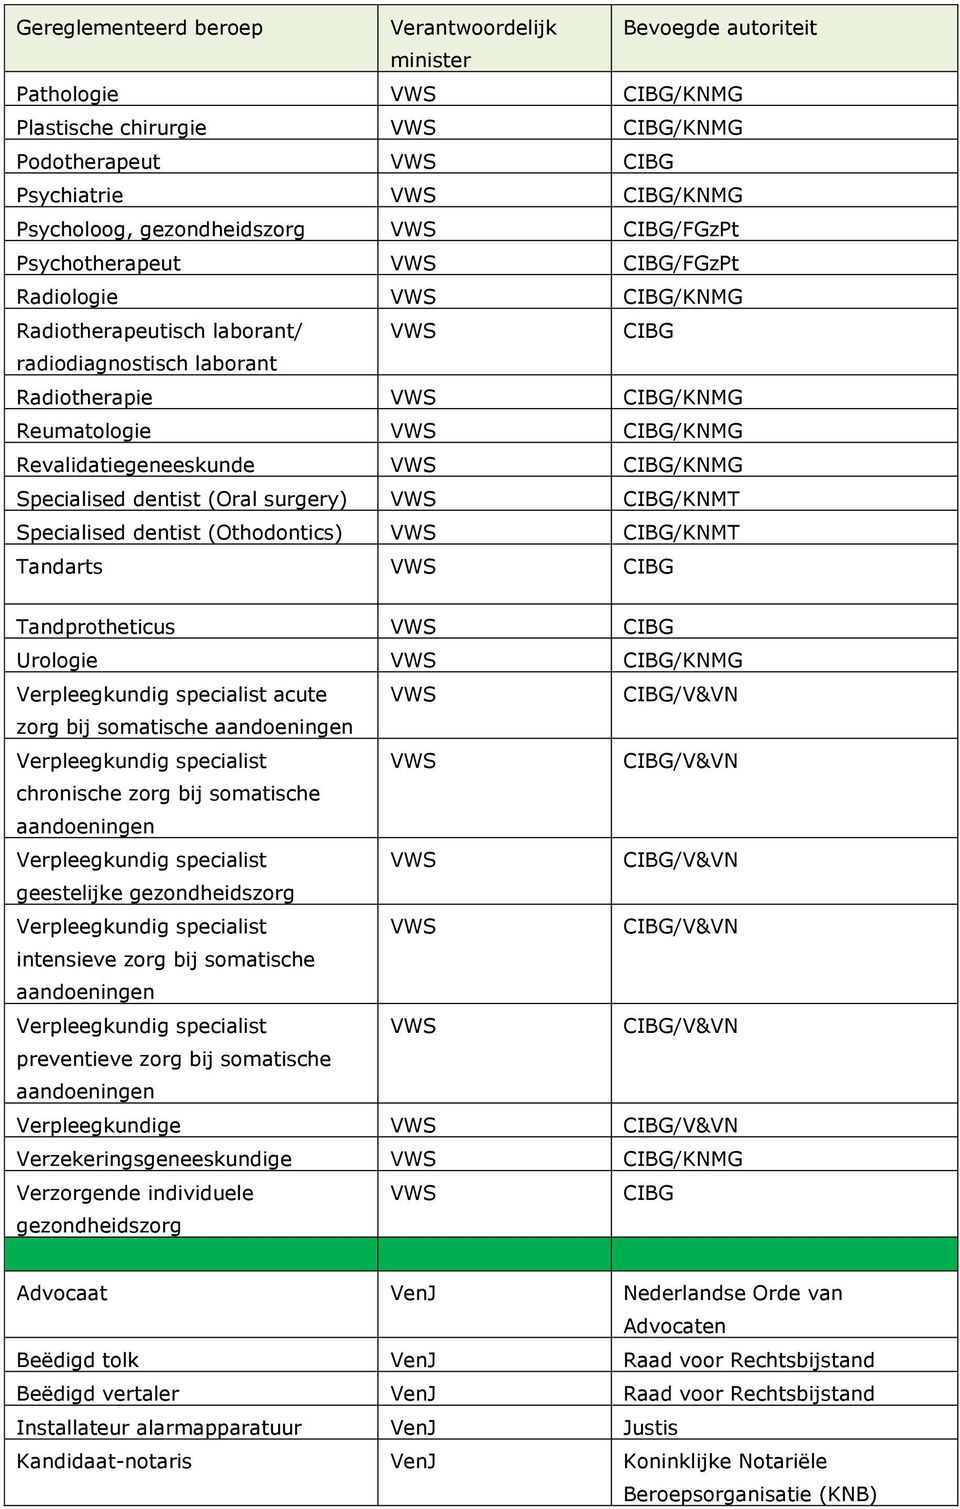 (Othodontics) CIBG/KNMT Tandarts CIBG Tandprotheticus CIBG Urologie CIBG/KNMG acute zorg bij somatische aandoeningen chronische zorg bij somatische aandoeningen geestelijke gezondheidszorg intensieve